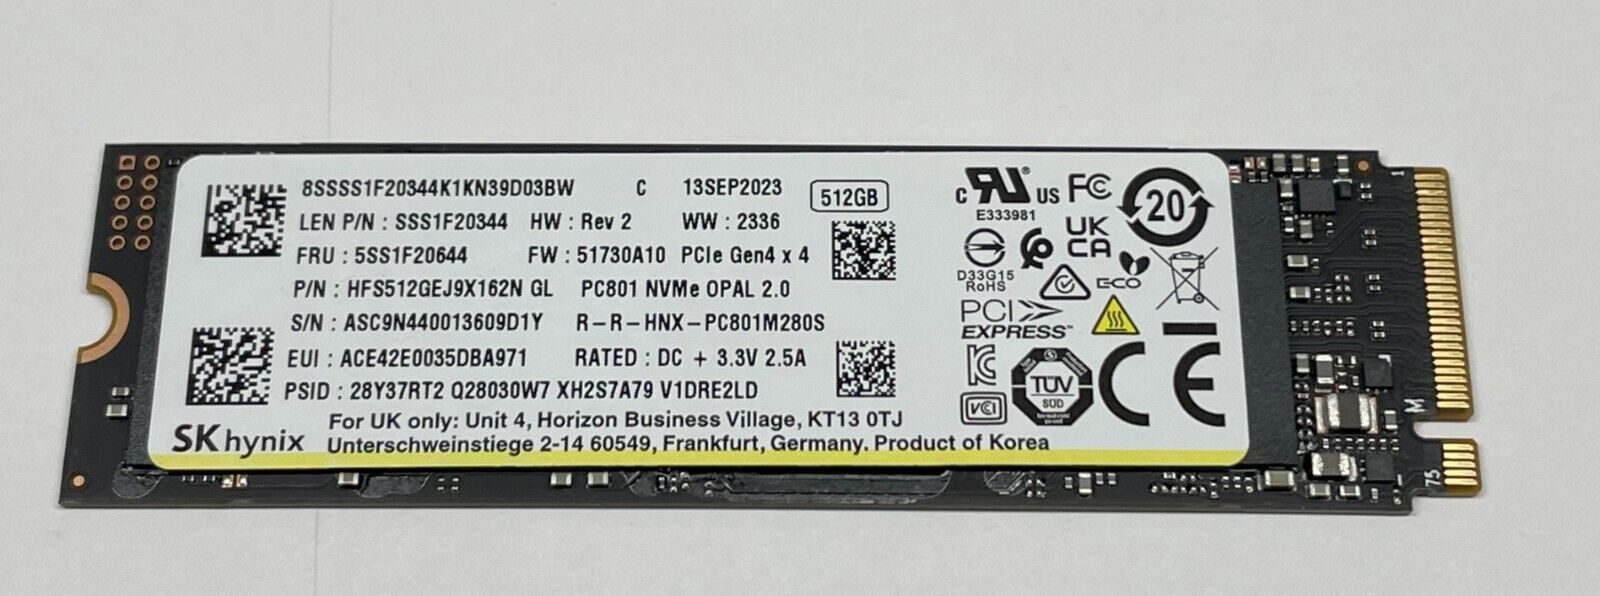 SK Hynix 512GB BC711 M.2 2280 PCIe NVMe SSD, HFS512GEJ9X162N, Gen4 x 4, OPAL 2.0